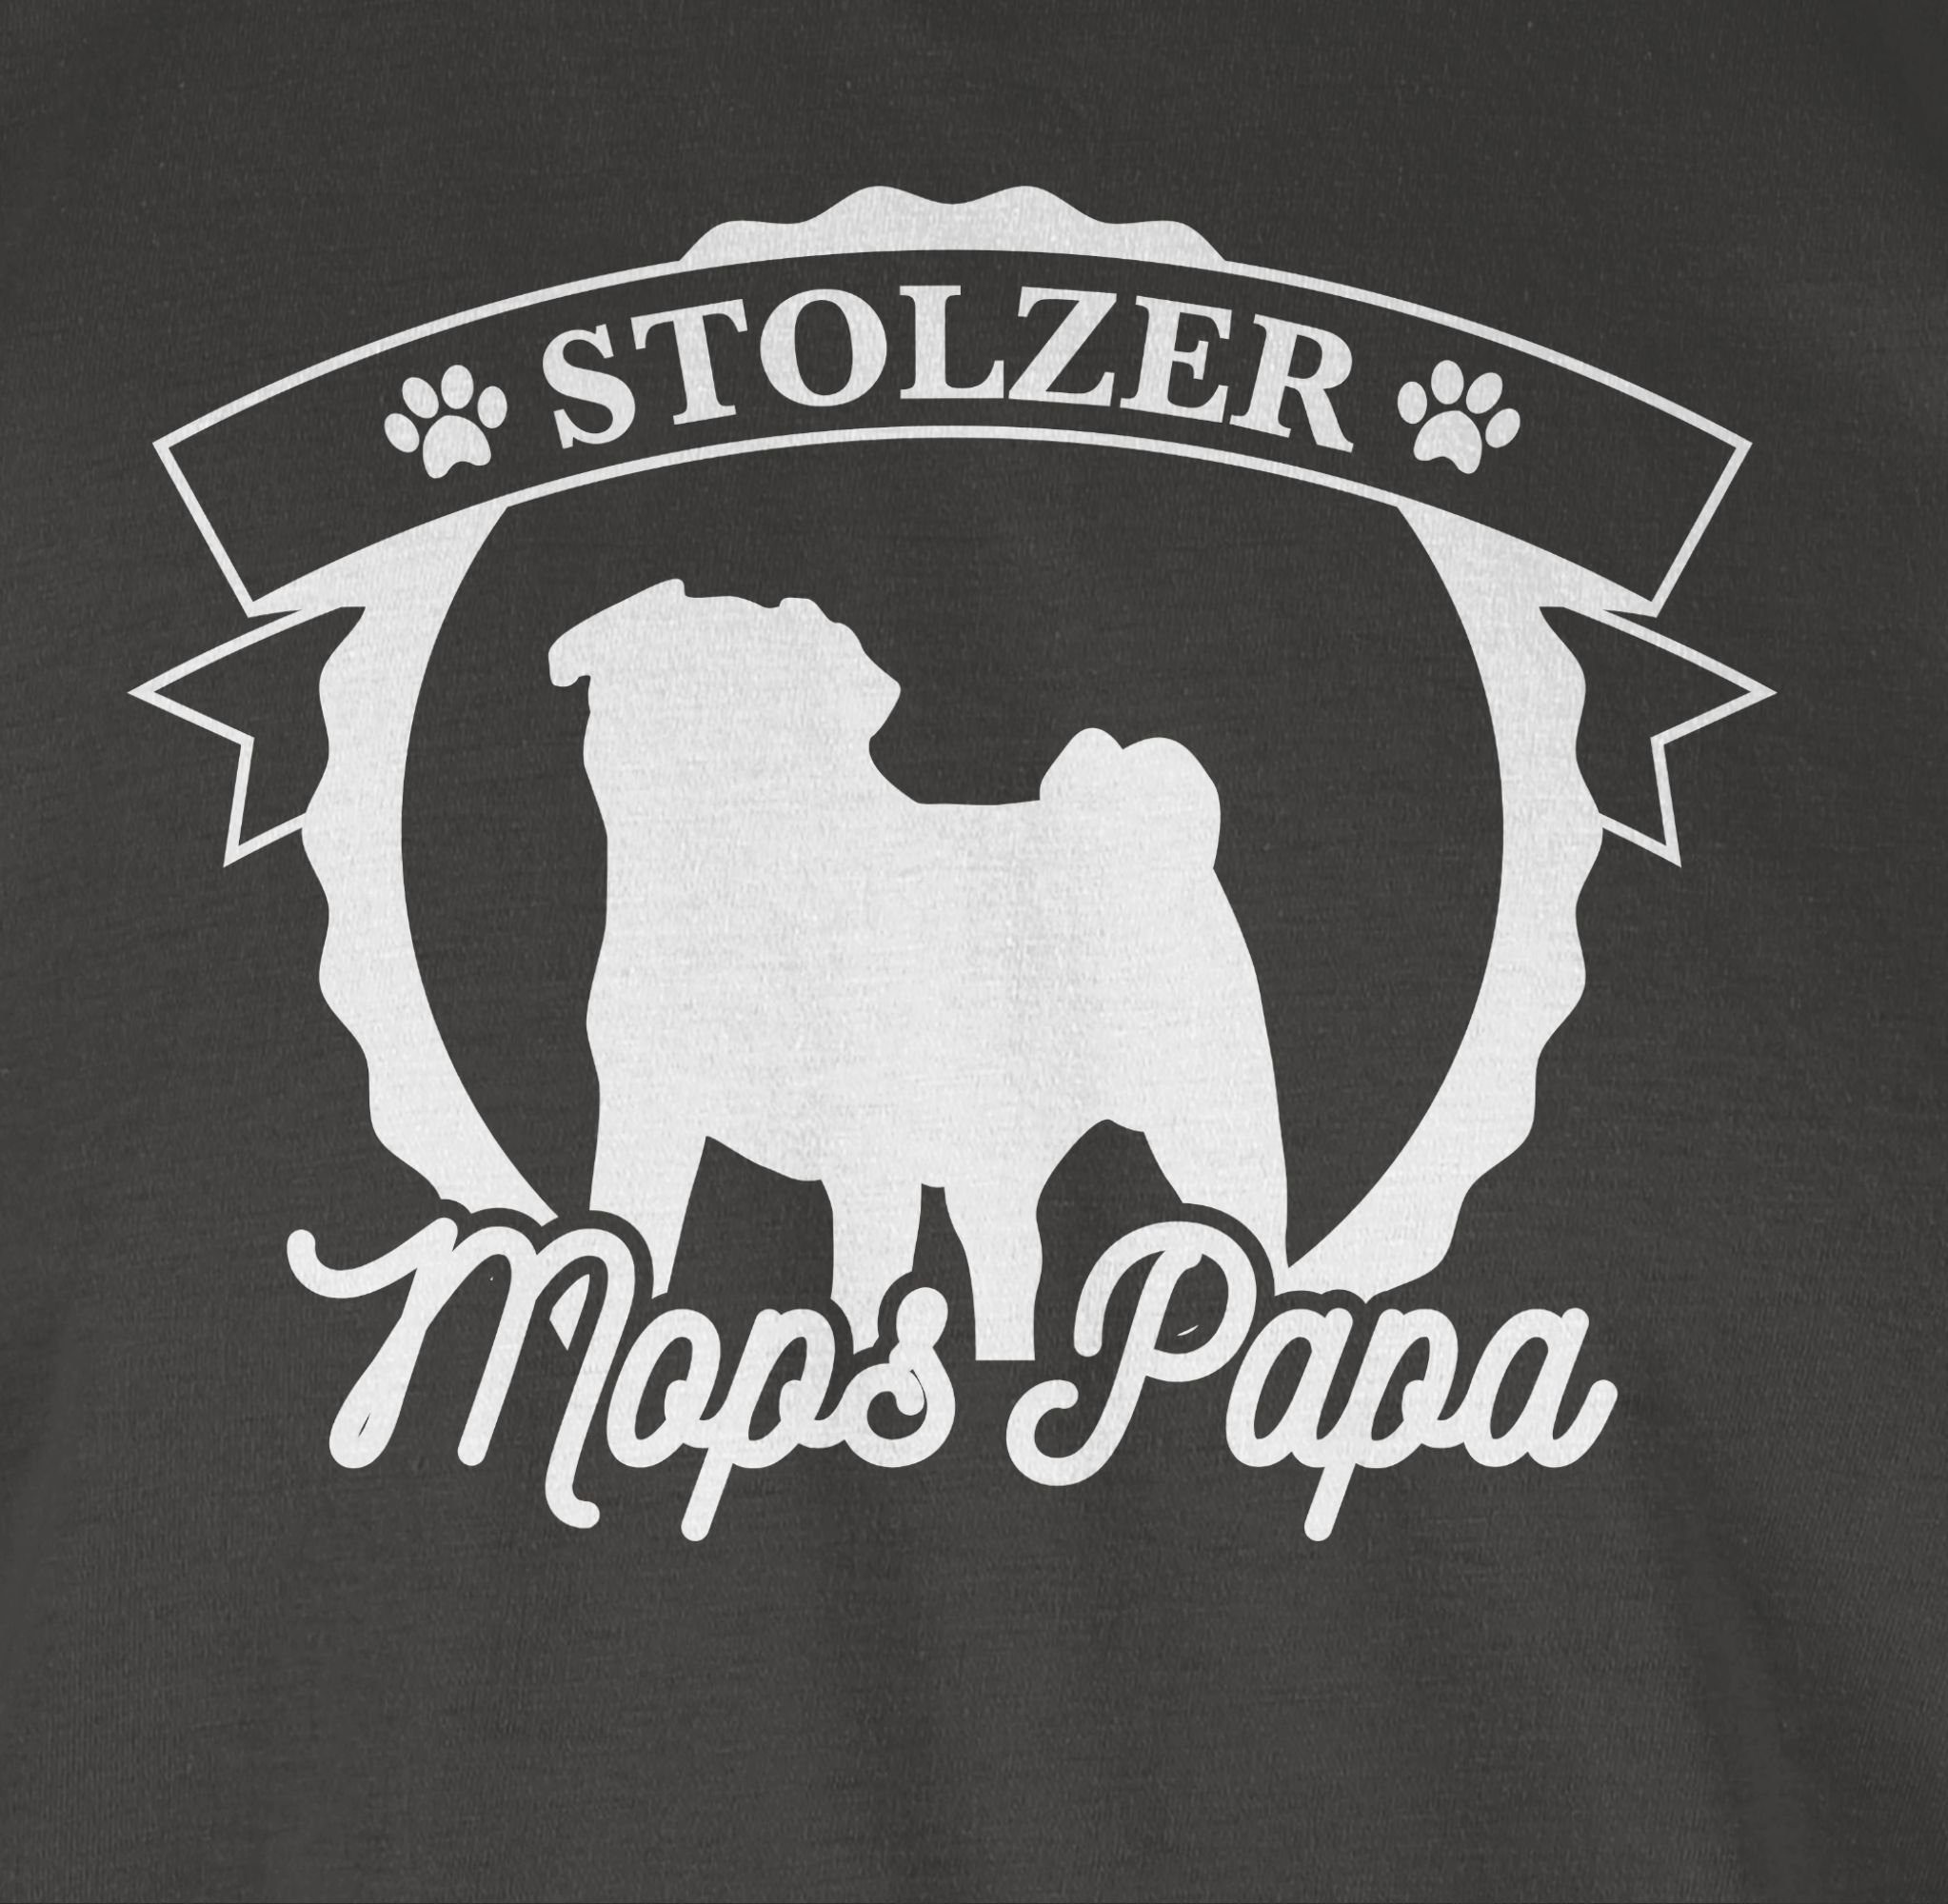 Papa Dunkelgrau Stolzer T-Shirt Shirtracer für 3 Mops Geschenk Hundebesitzer